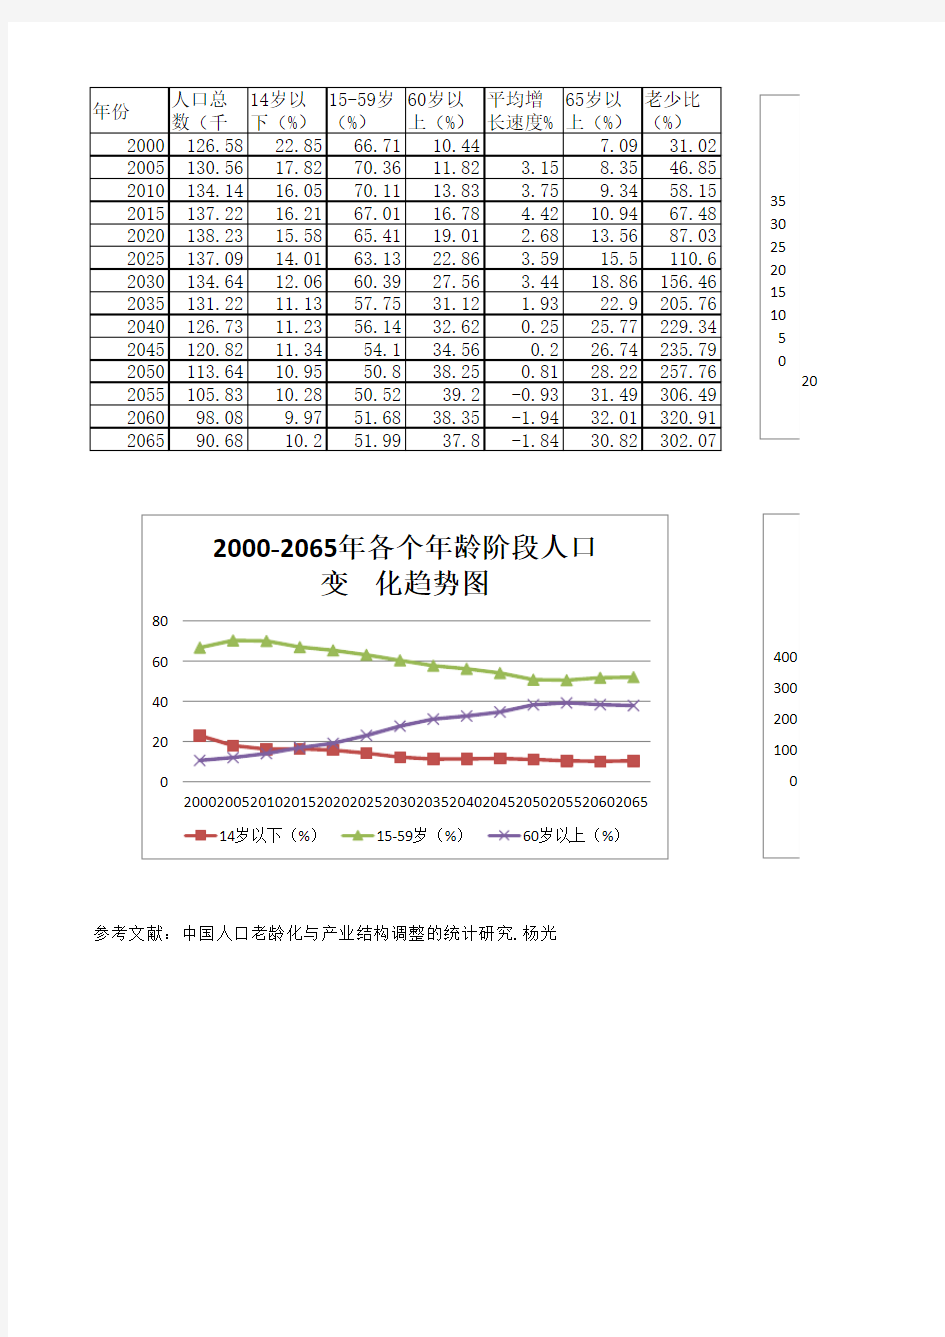 中国人口老龄化趋势分析